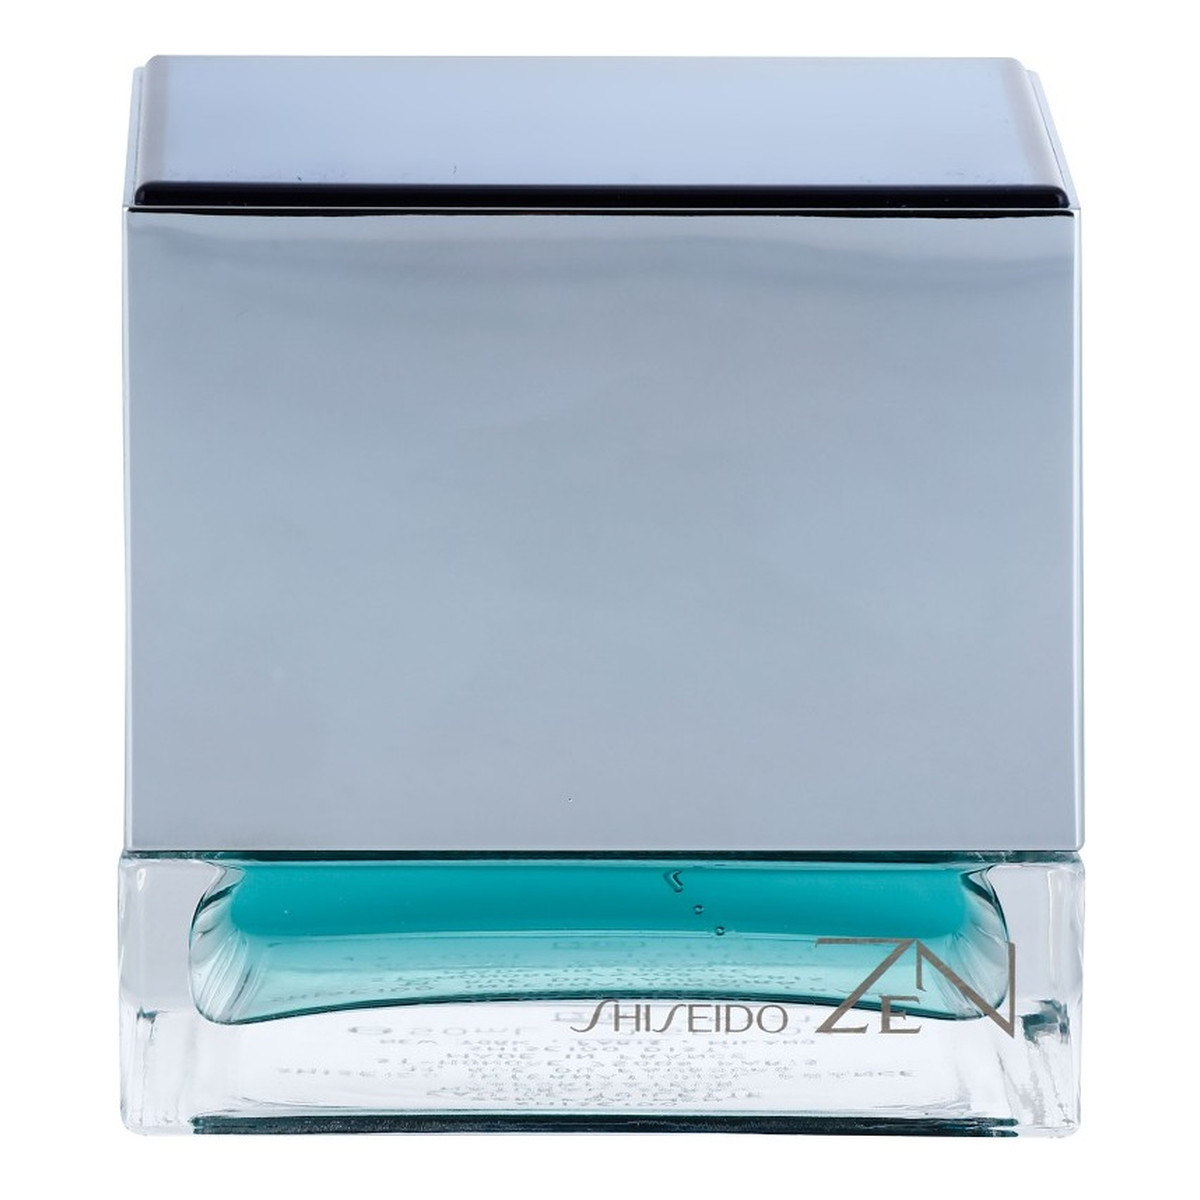 Shiseido Zen for Men woda toaletowa dla mężczyzn 50ml